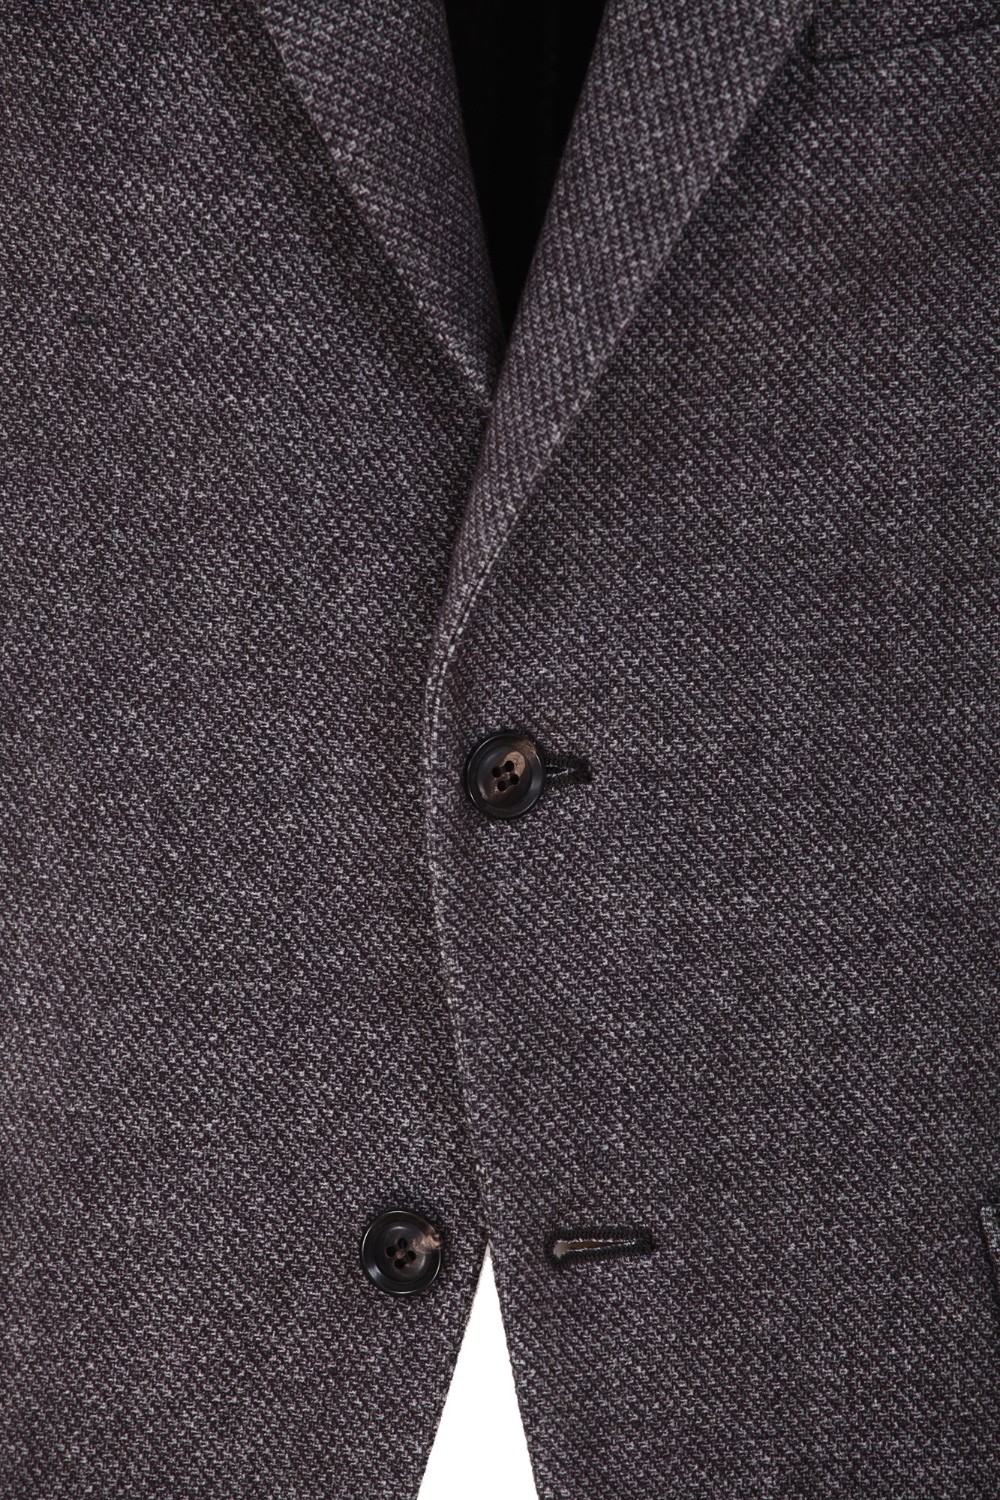 shop CIRCOLO Saldi Giacca: Circolo giacca in  felpa di cotone, elasticizzata.
Chiusura a due bottoni.
Tasche a toppa.
Doppio spacco, posteriore.
Composizione: 95% cotone 5% elastan.
Made in Romania.. CN3692-ANTRA number 927740